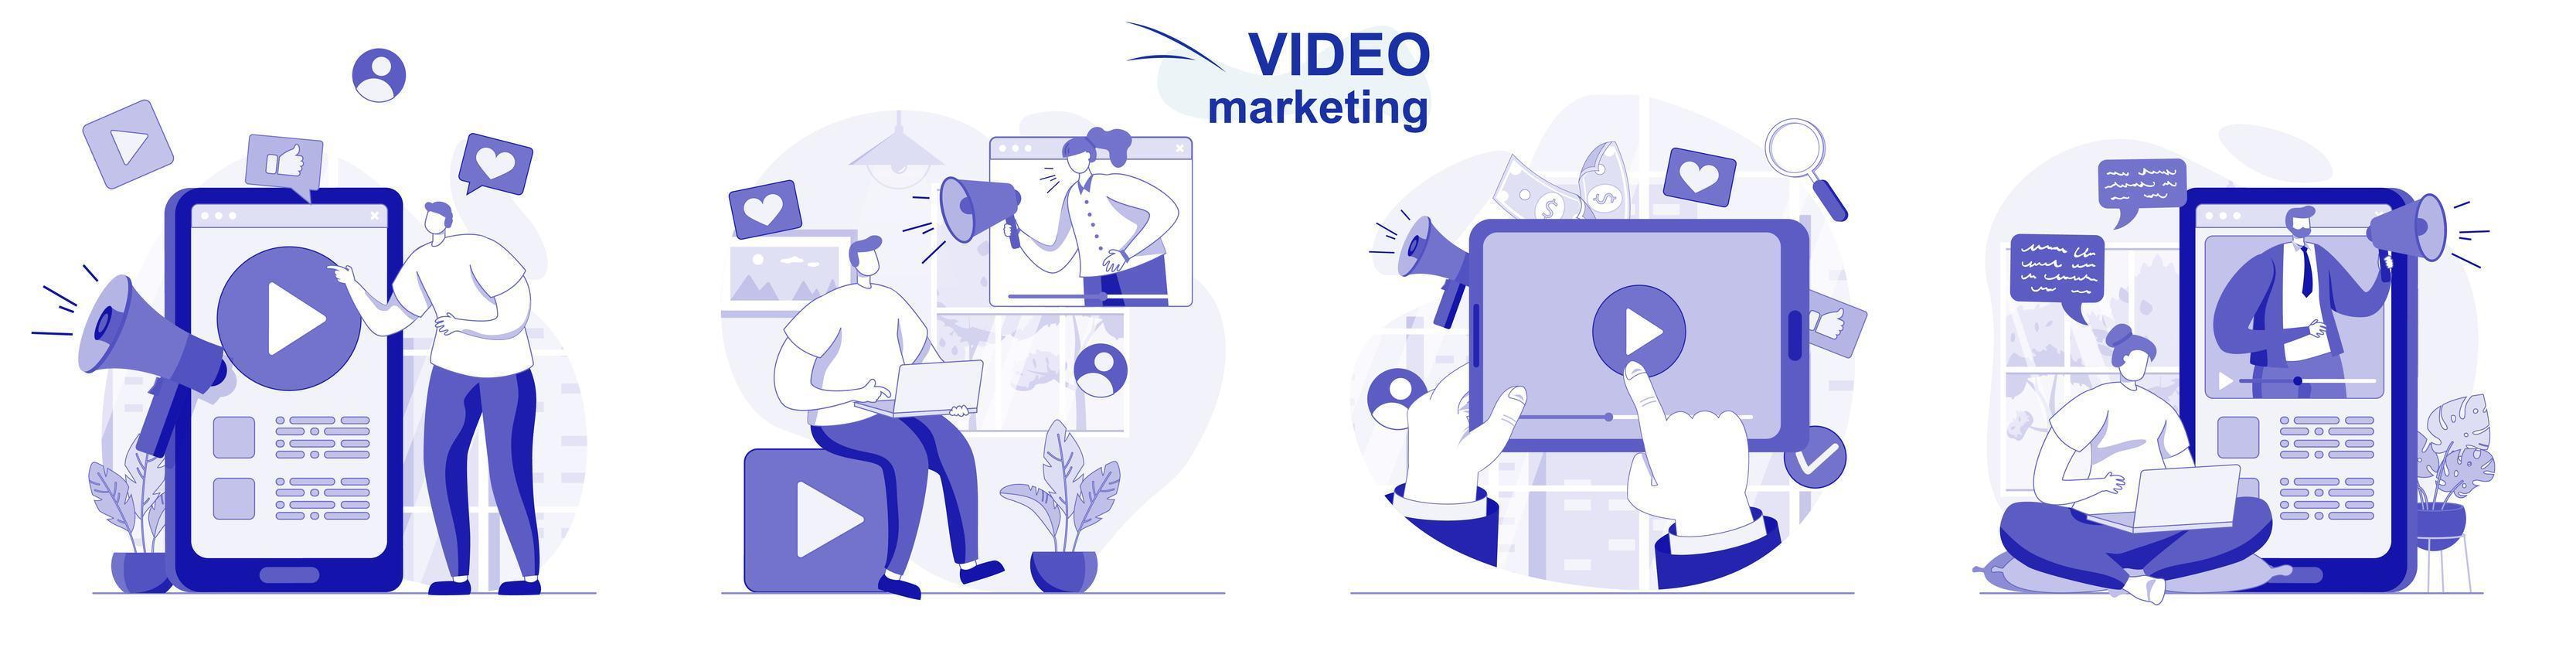 video marketing aislado en diseño plano. la gente crea y publica contenido, promoción en línea, colección de escenas. ilustración vectorial para blogs, sitios web, aplicaciones móviles, materiales promocionales. vector